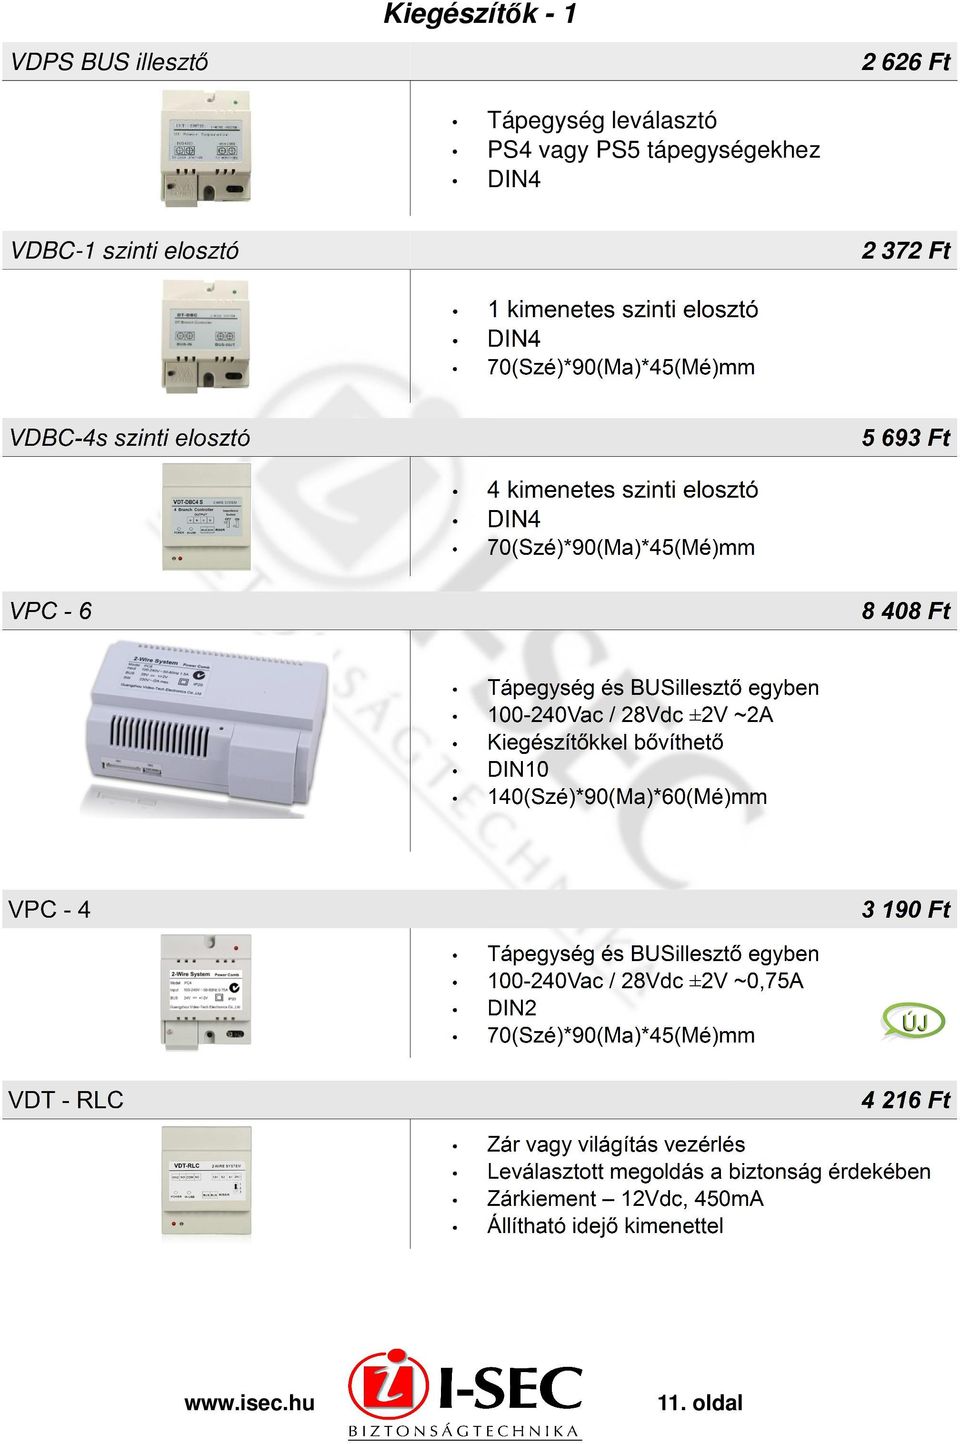 PS5 tápegységekhez DIN4 VDBC-1 szinti